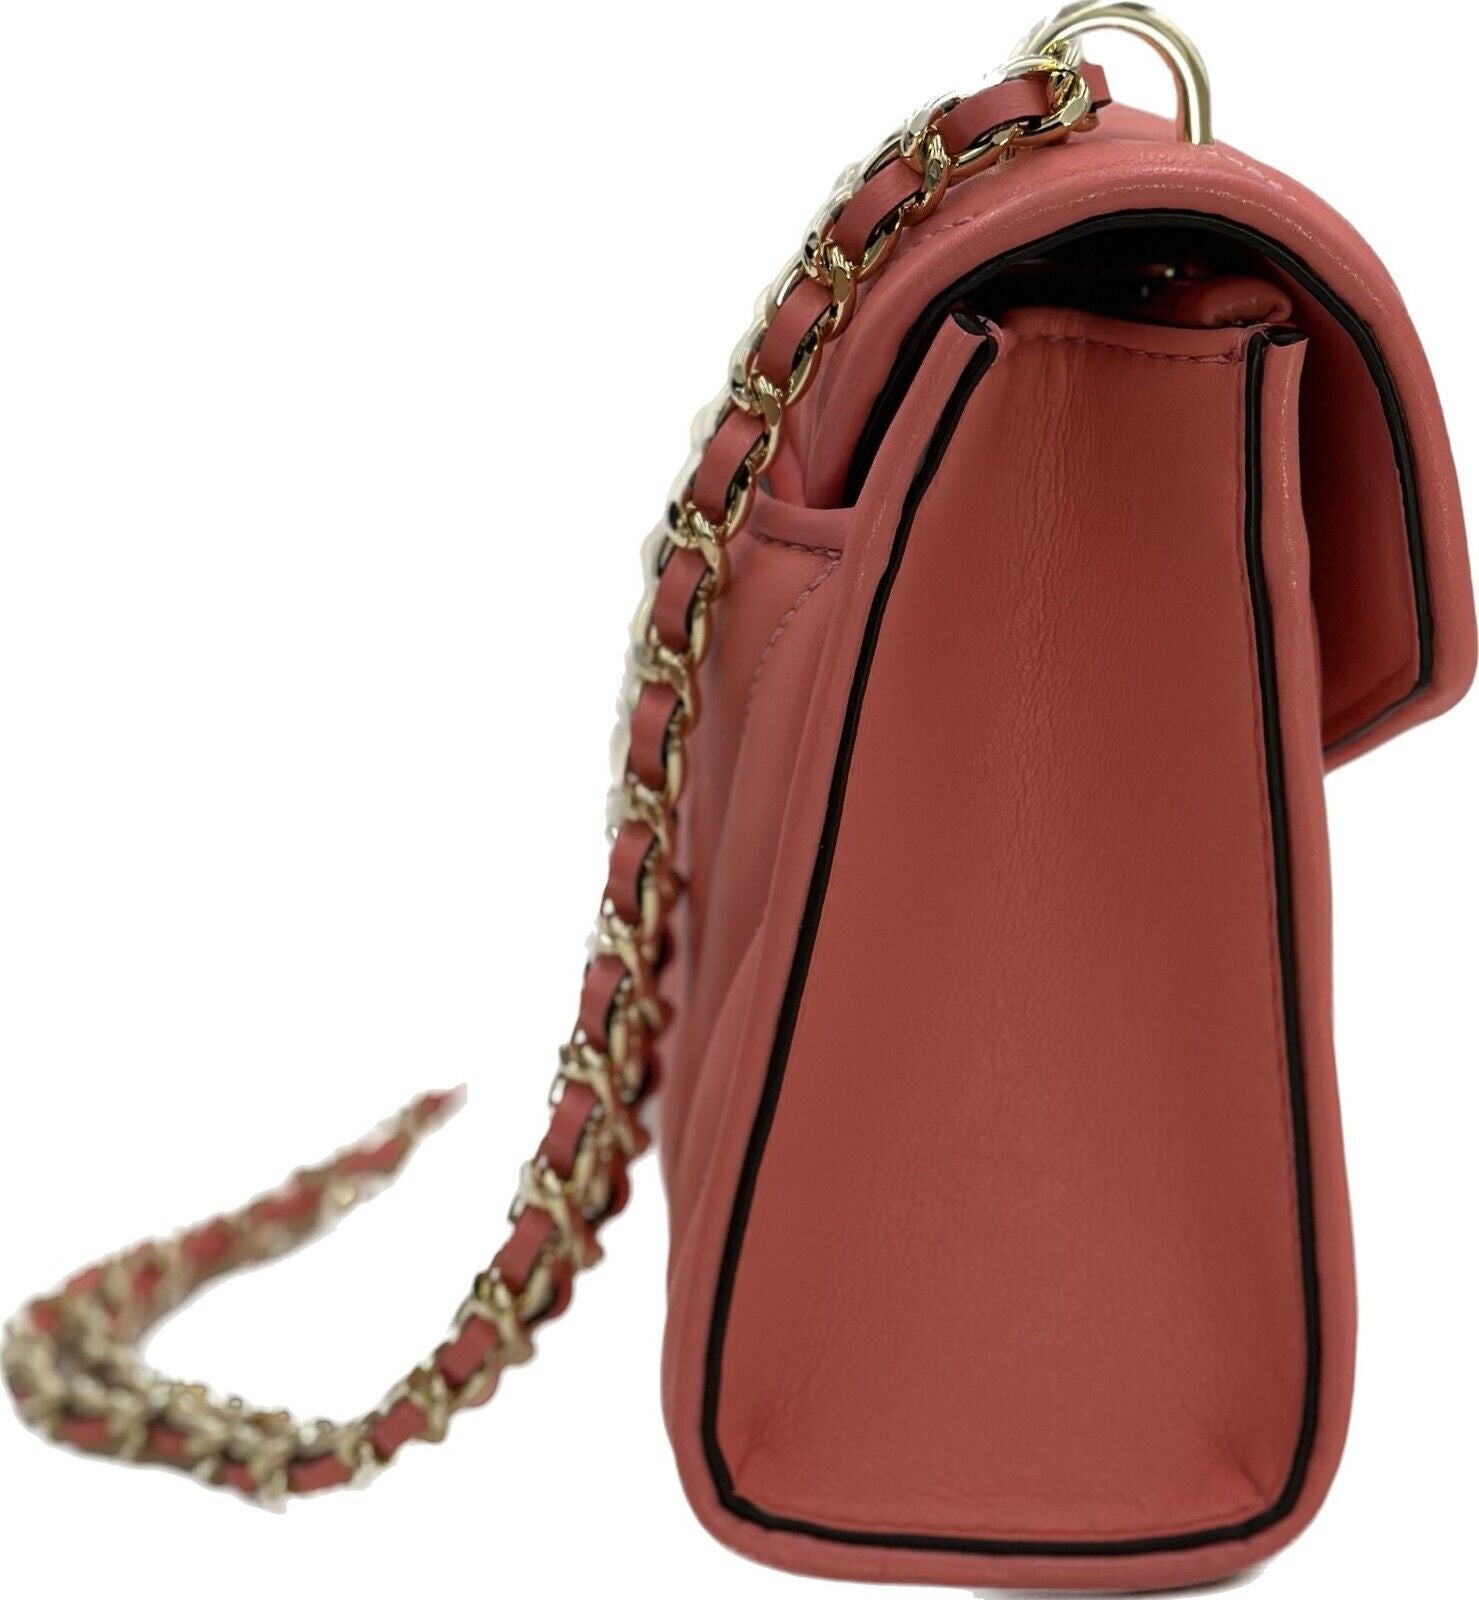 Michael Kors Women's Rose Vegan Leather Bag in Grapefruit - 193599735610